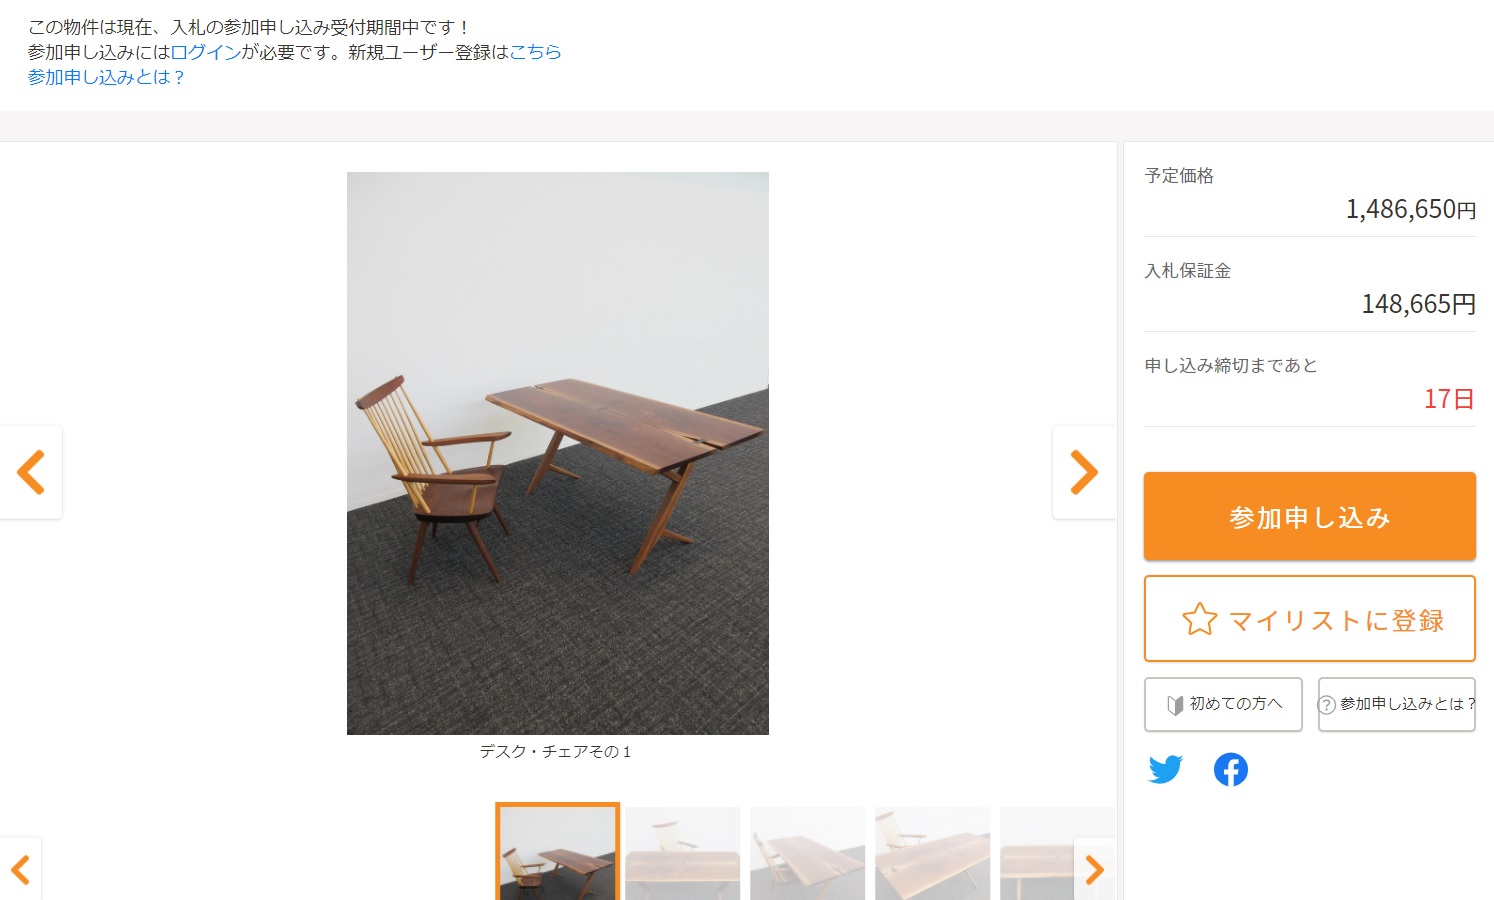 인터넷 경매에 등장한 이치카와 시장실에 있던 책상과 의자